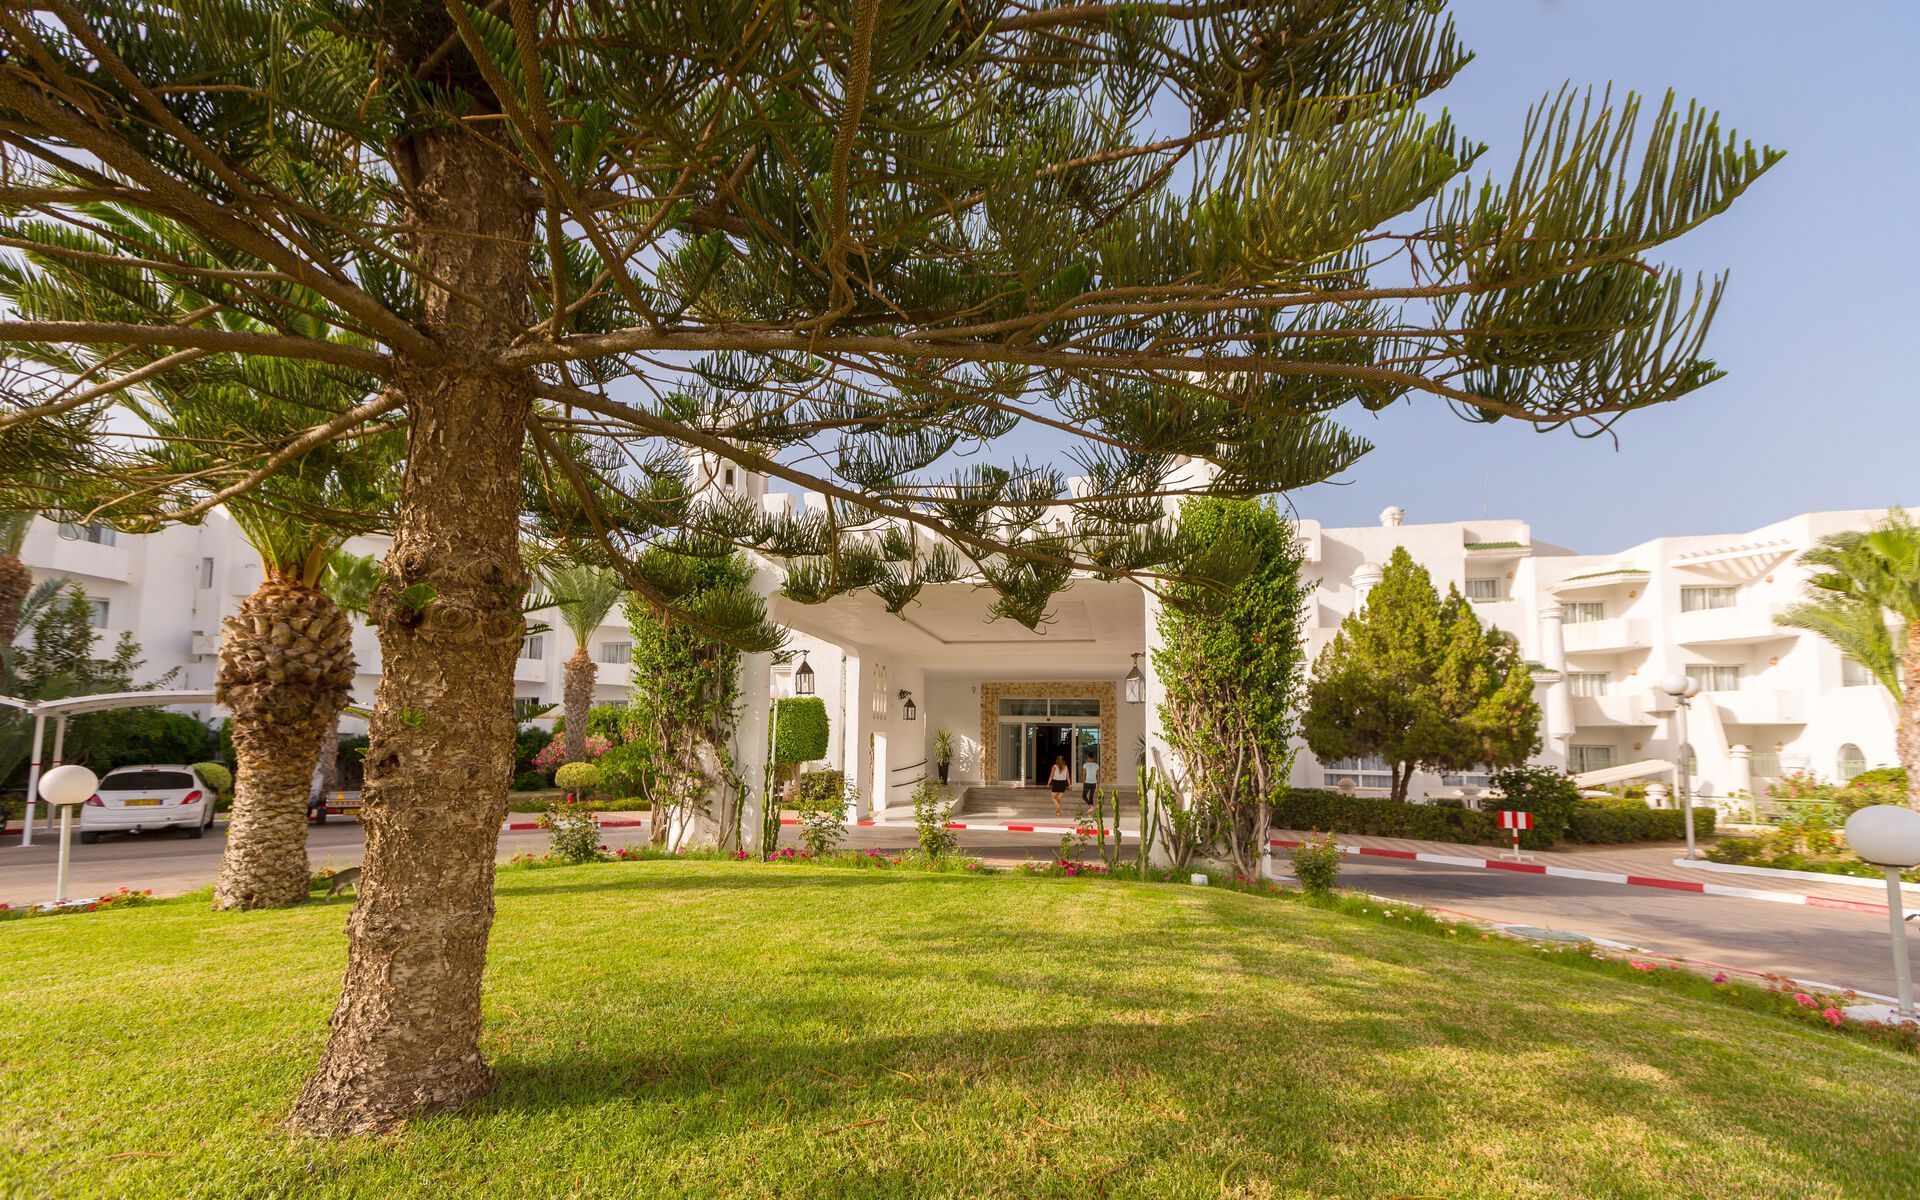 Tunisie - Monastir - Hotel El Mouradi Skanes 4*